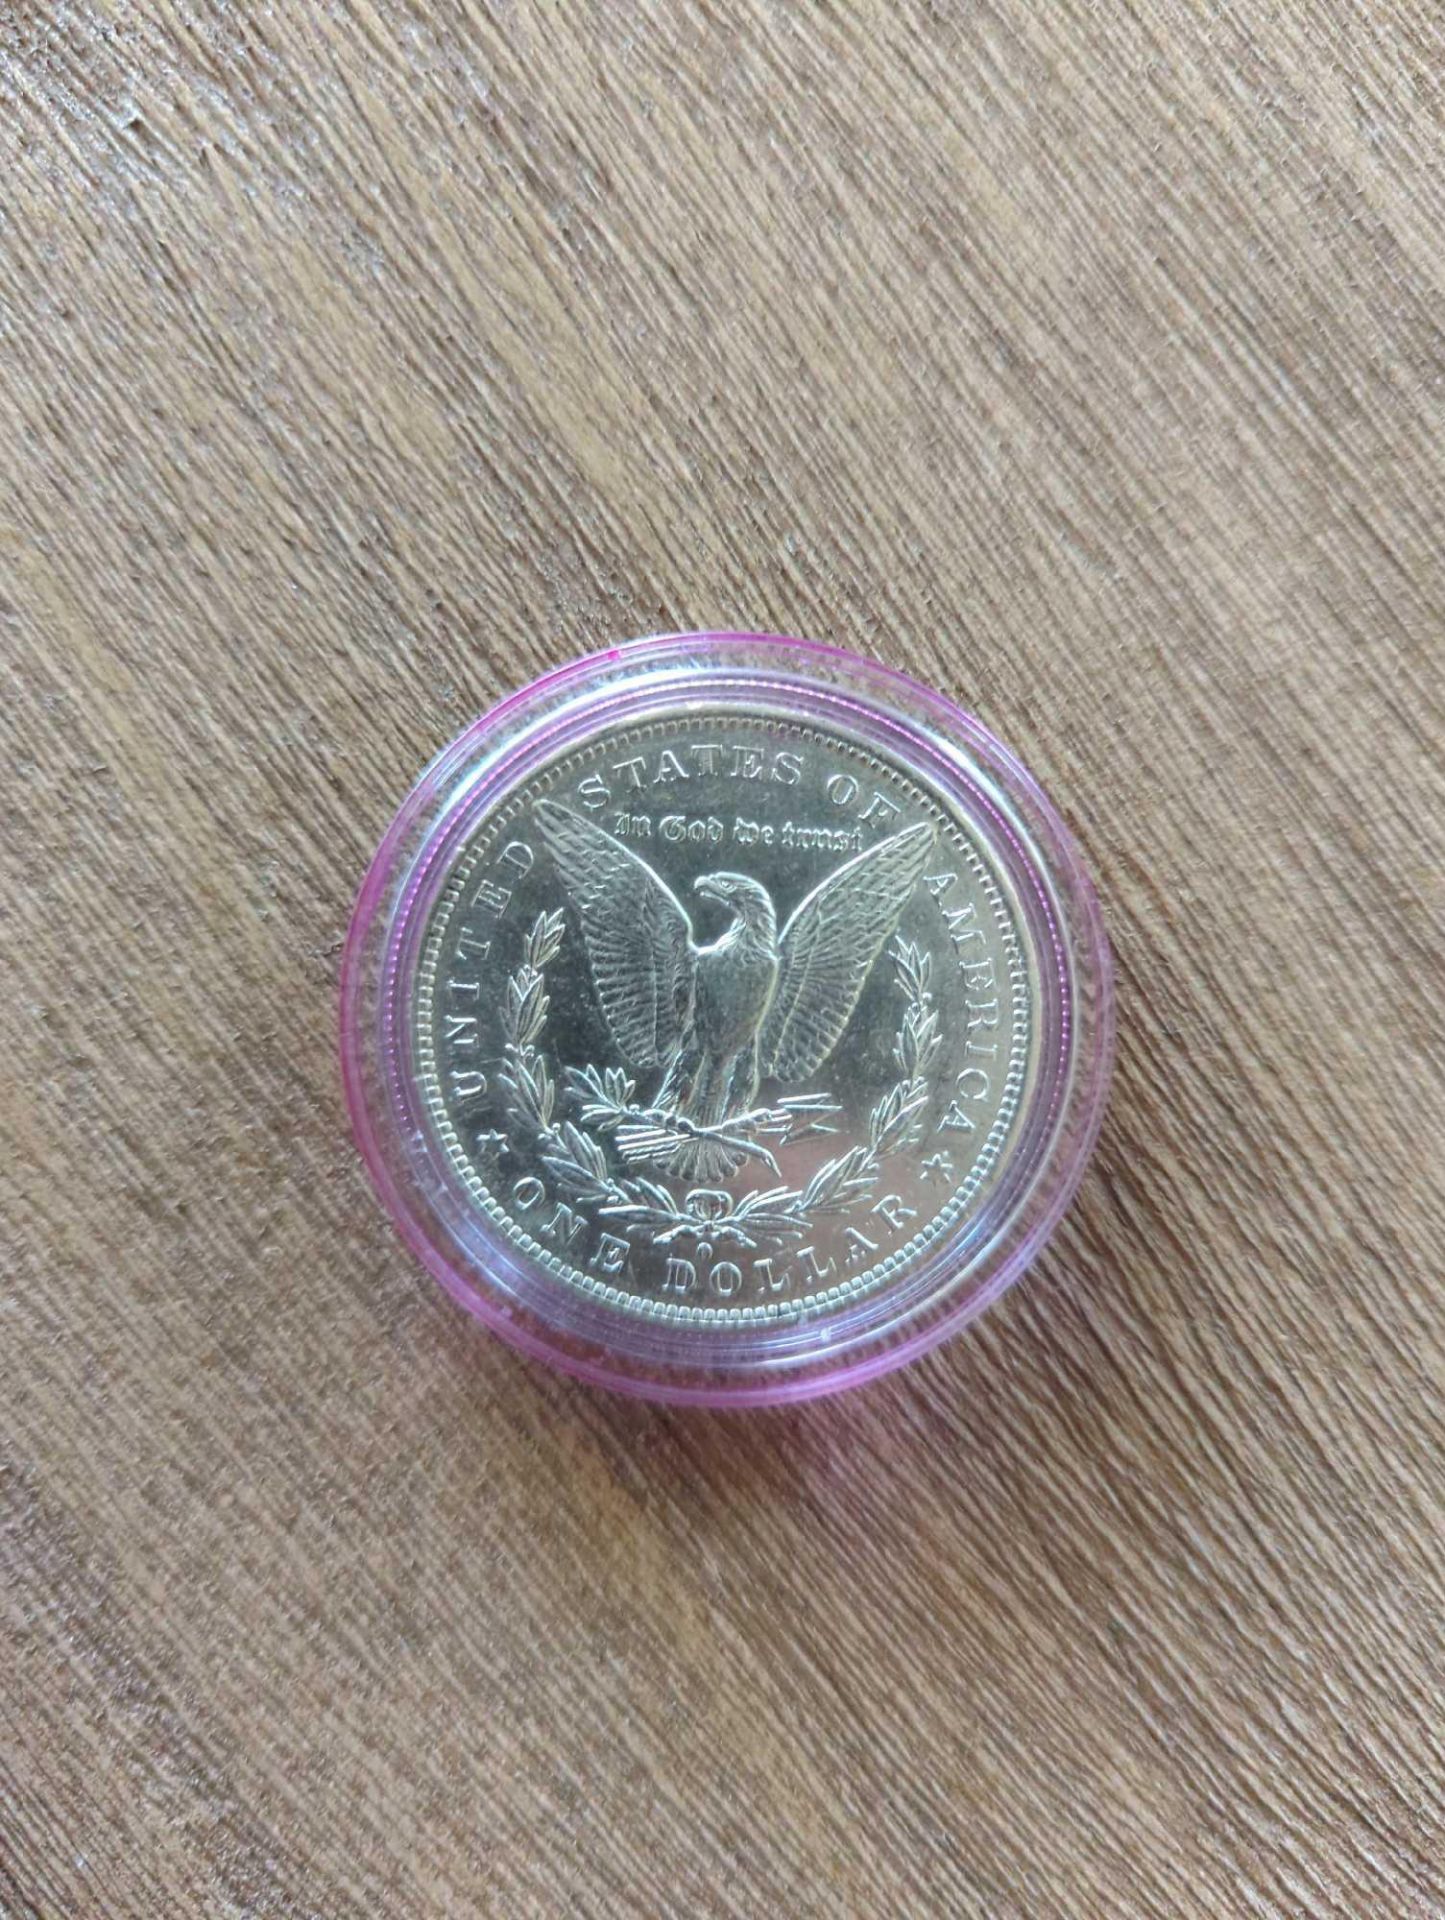 1883 VF Morgan Dollar - Image 3 of 3